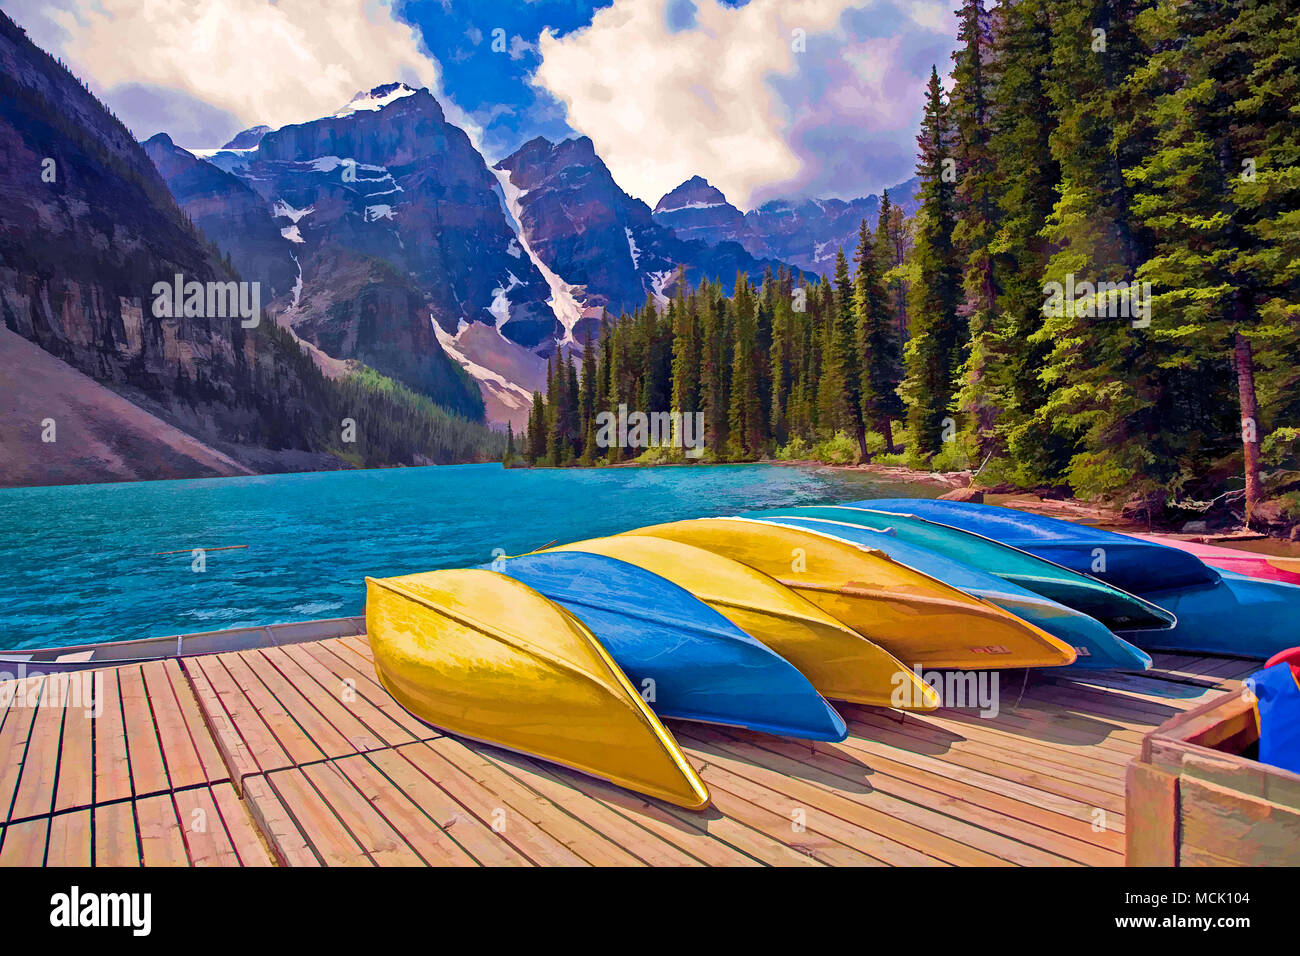 Kanada; Alberta; Moraine Lake im Tal der zehn Gipfel in den Kanadischen Rocky Mountains und den Banff National Park, Alberta, Kanada, Nordamerika Stockfoto